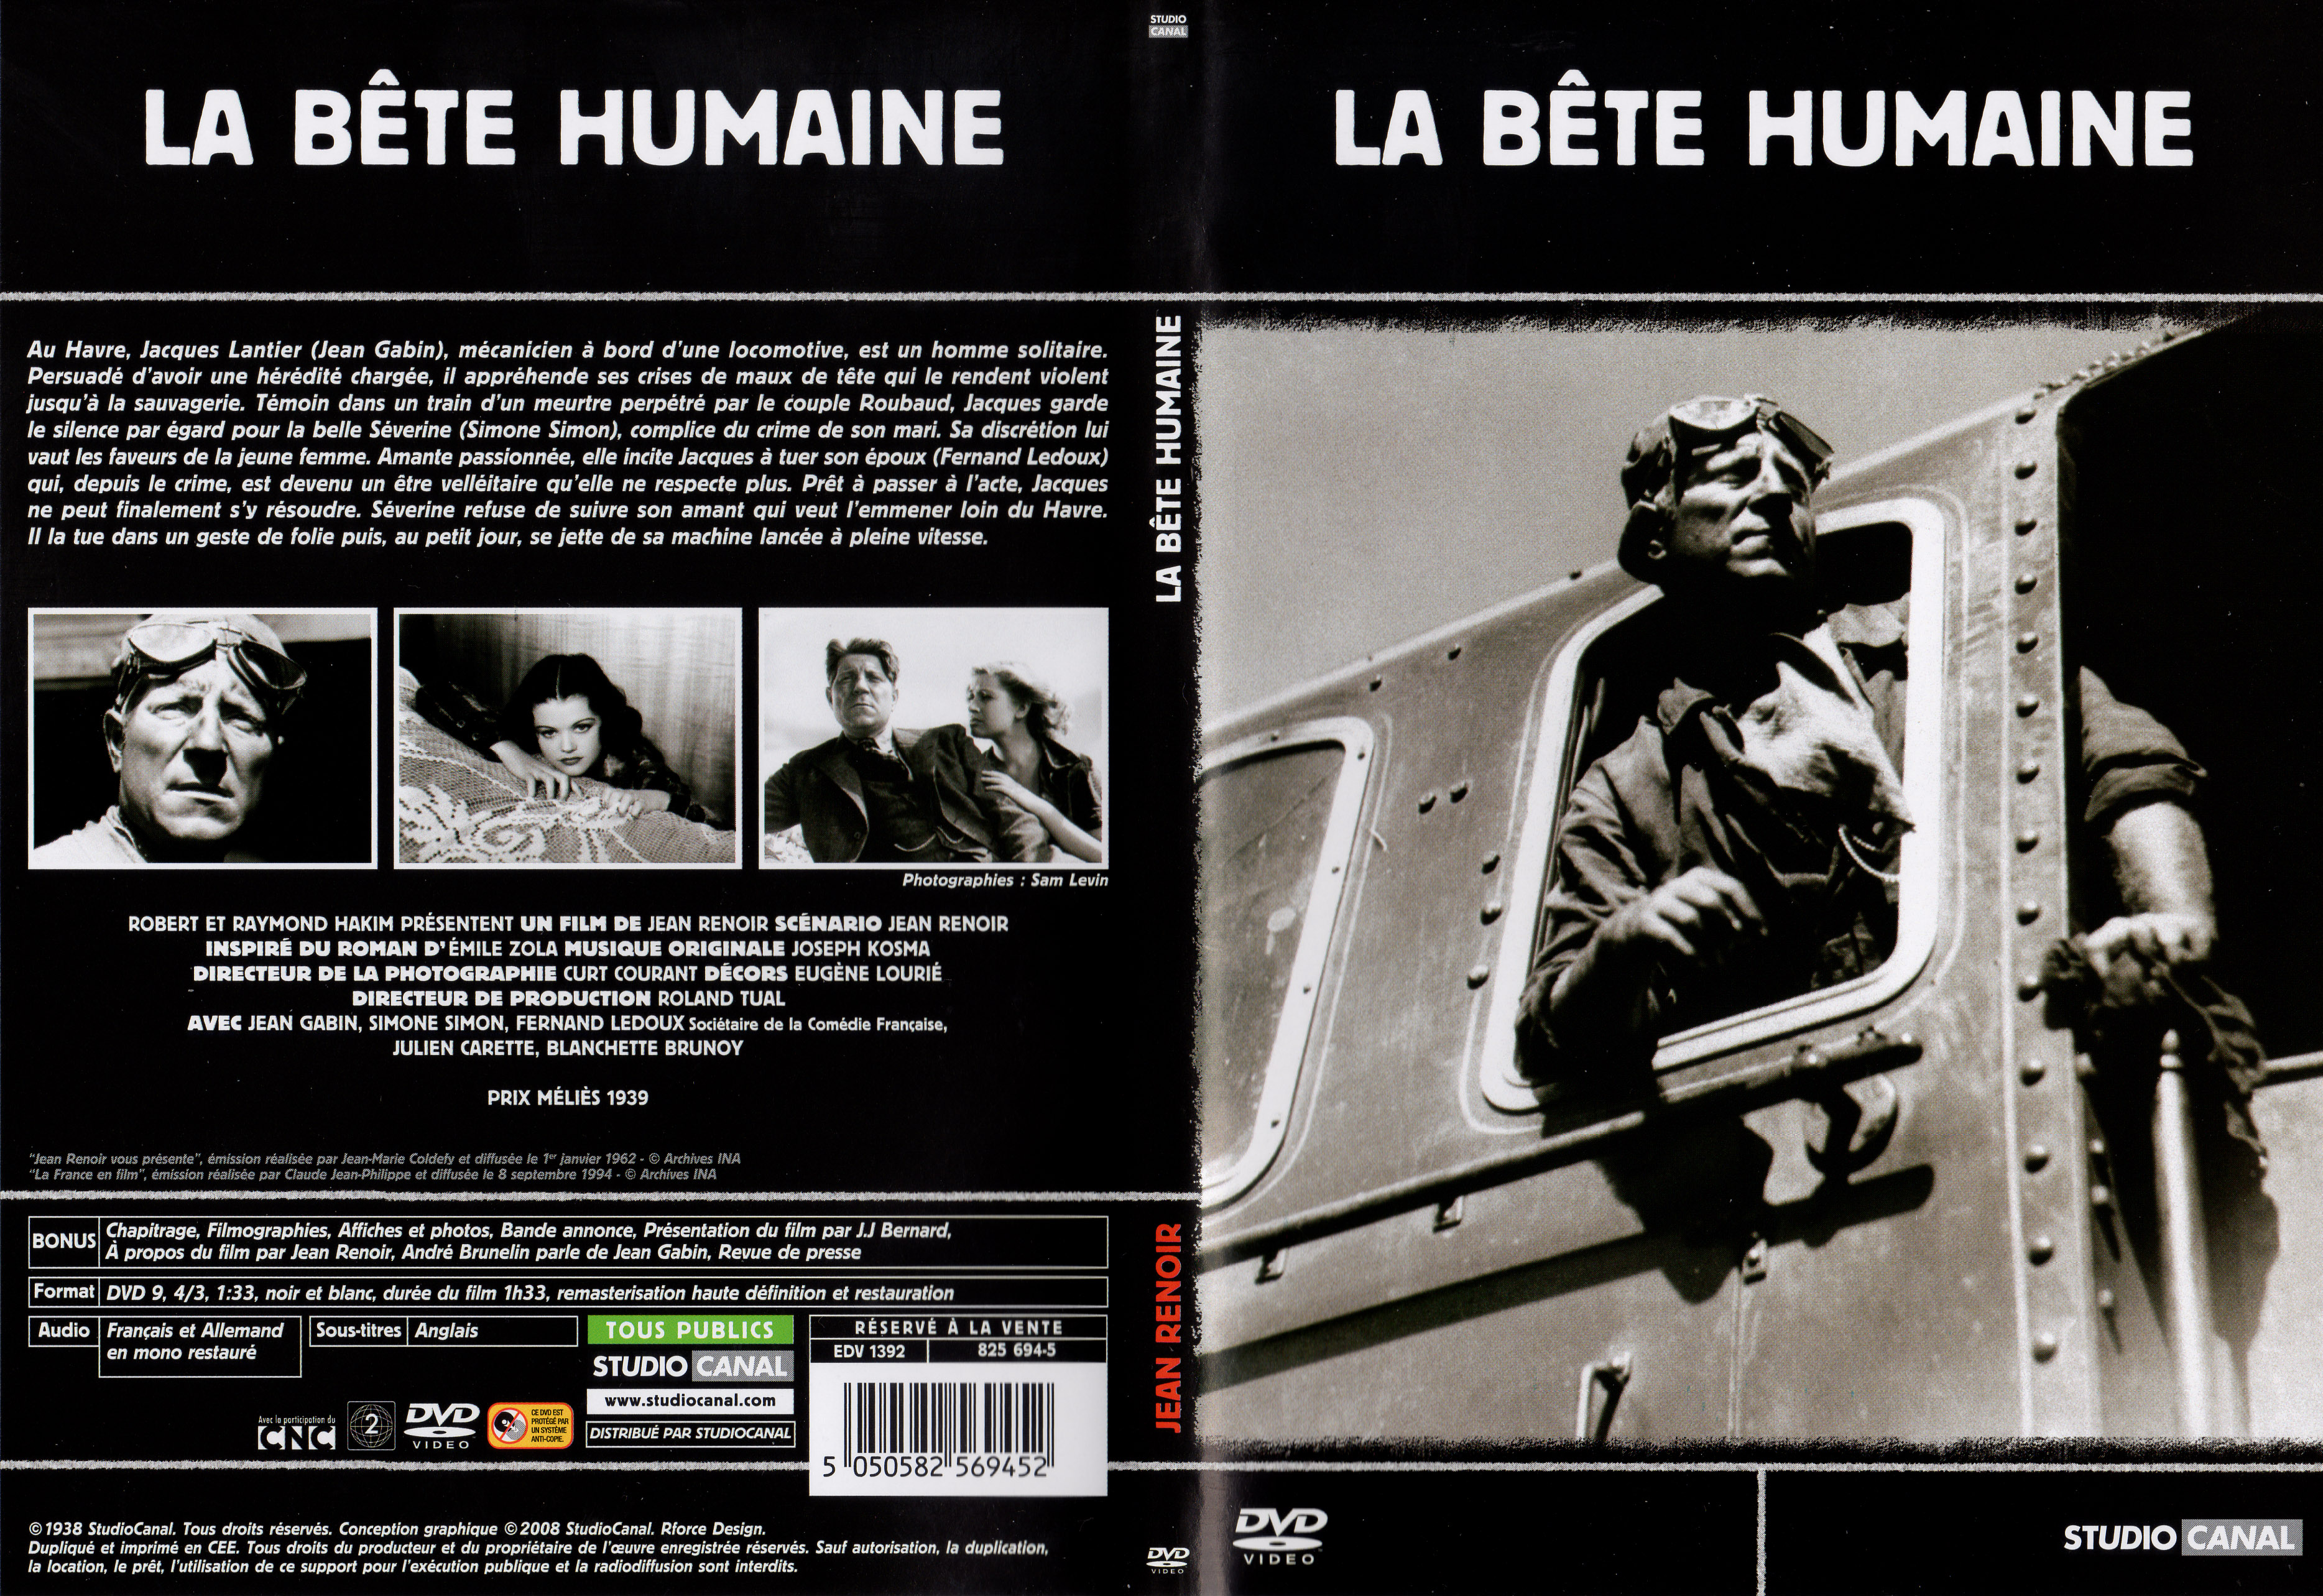 Jaquette DVD La bte humaine v4